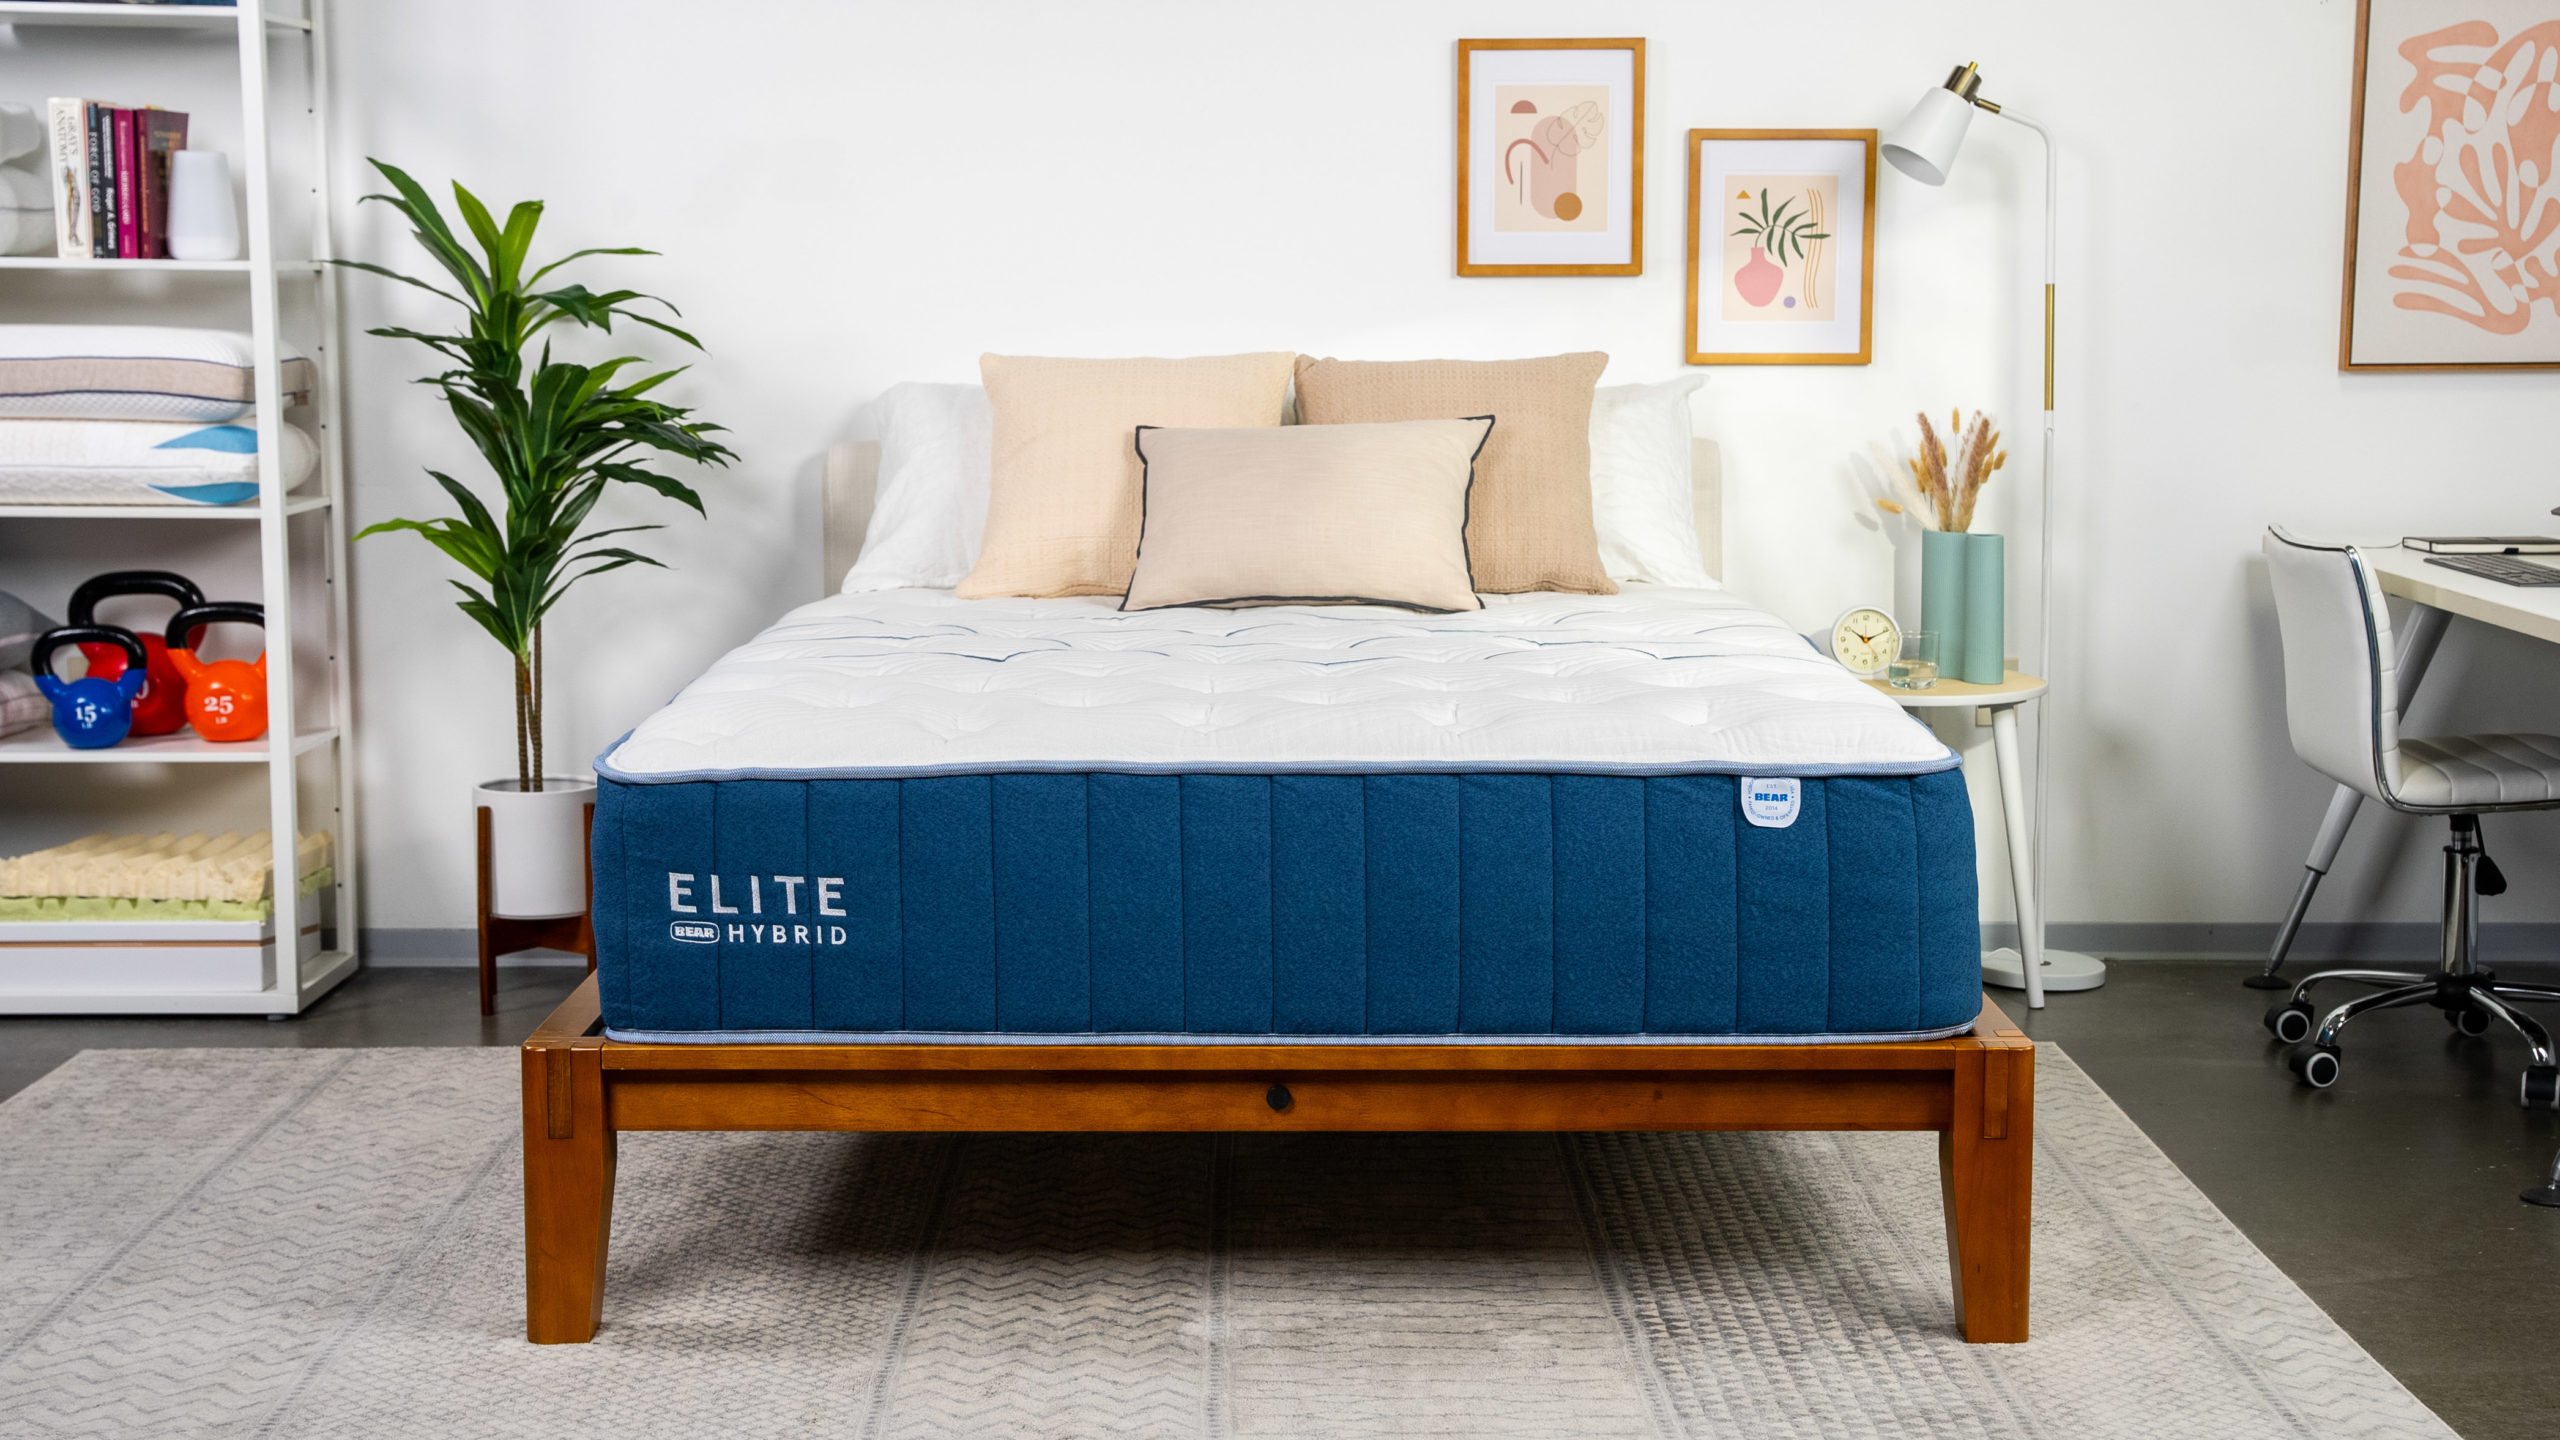 kingsthorne hybrid elite mattress